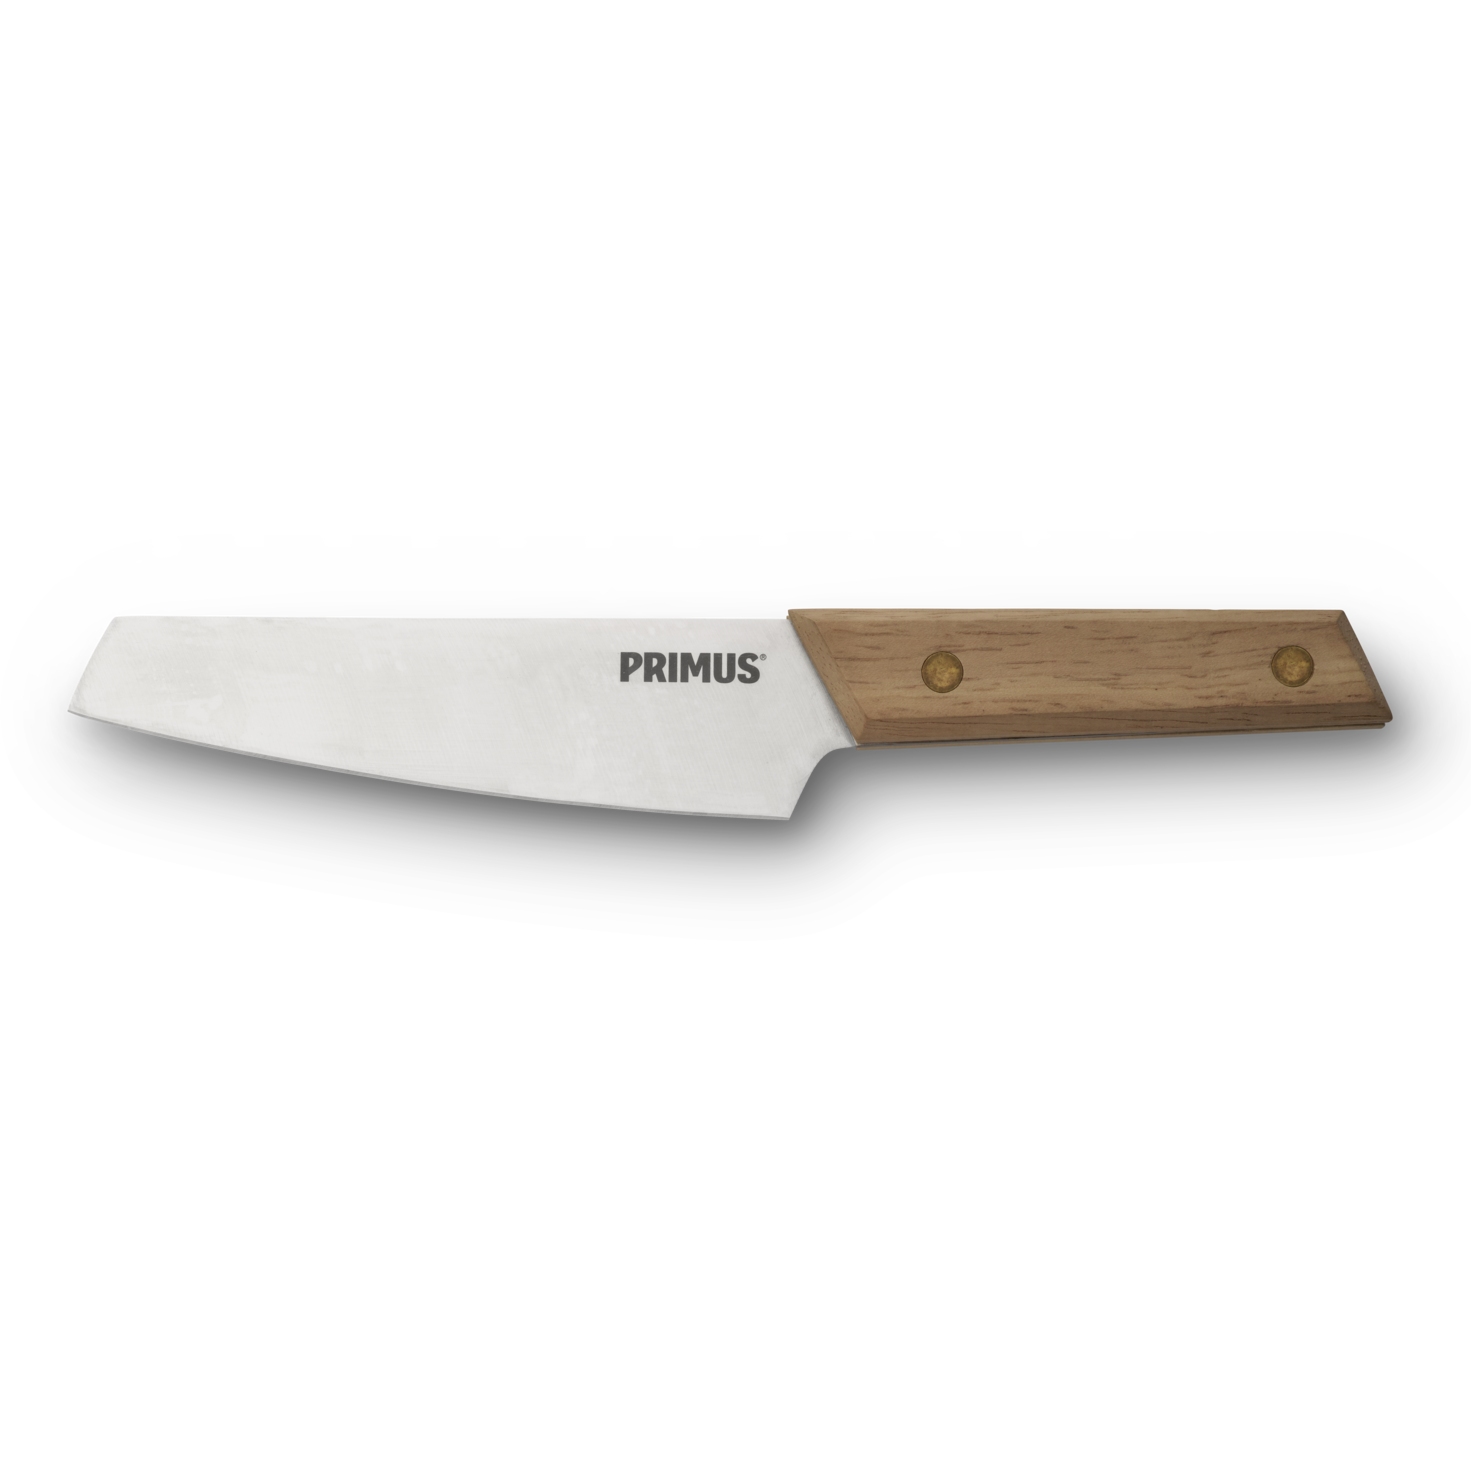 Produktbild von Primus CampFire Messer - Small